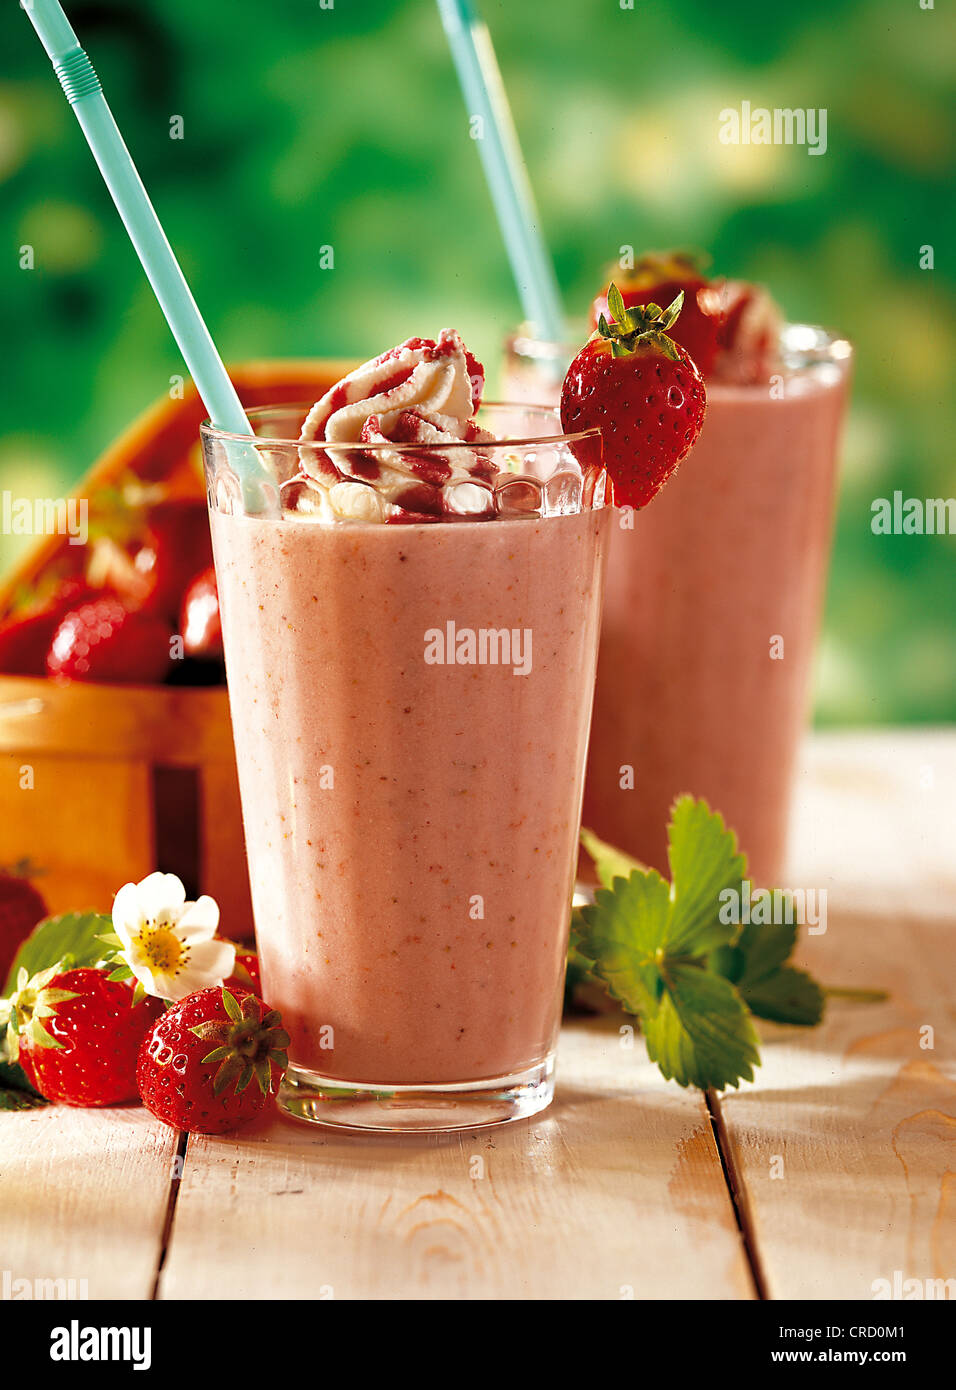 Fruity strawberry shake, Switzerland. Stock Photo